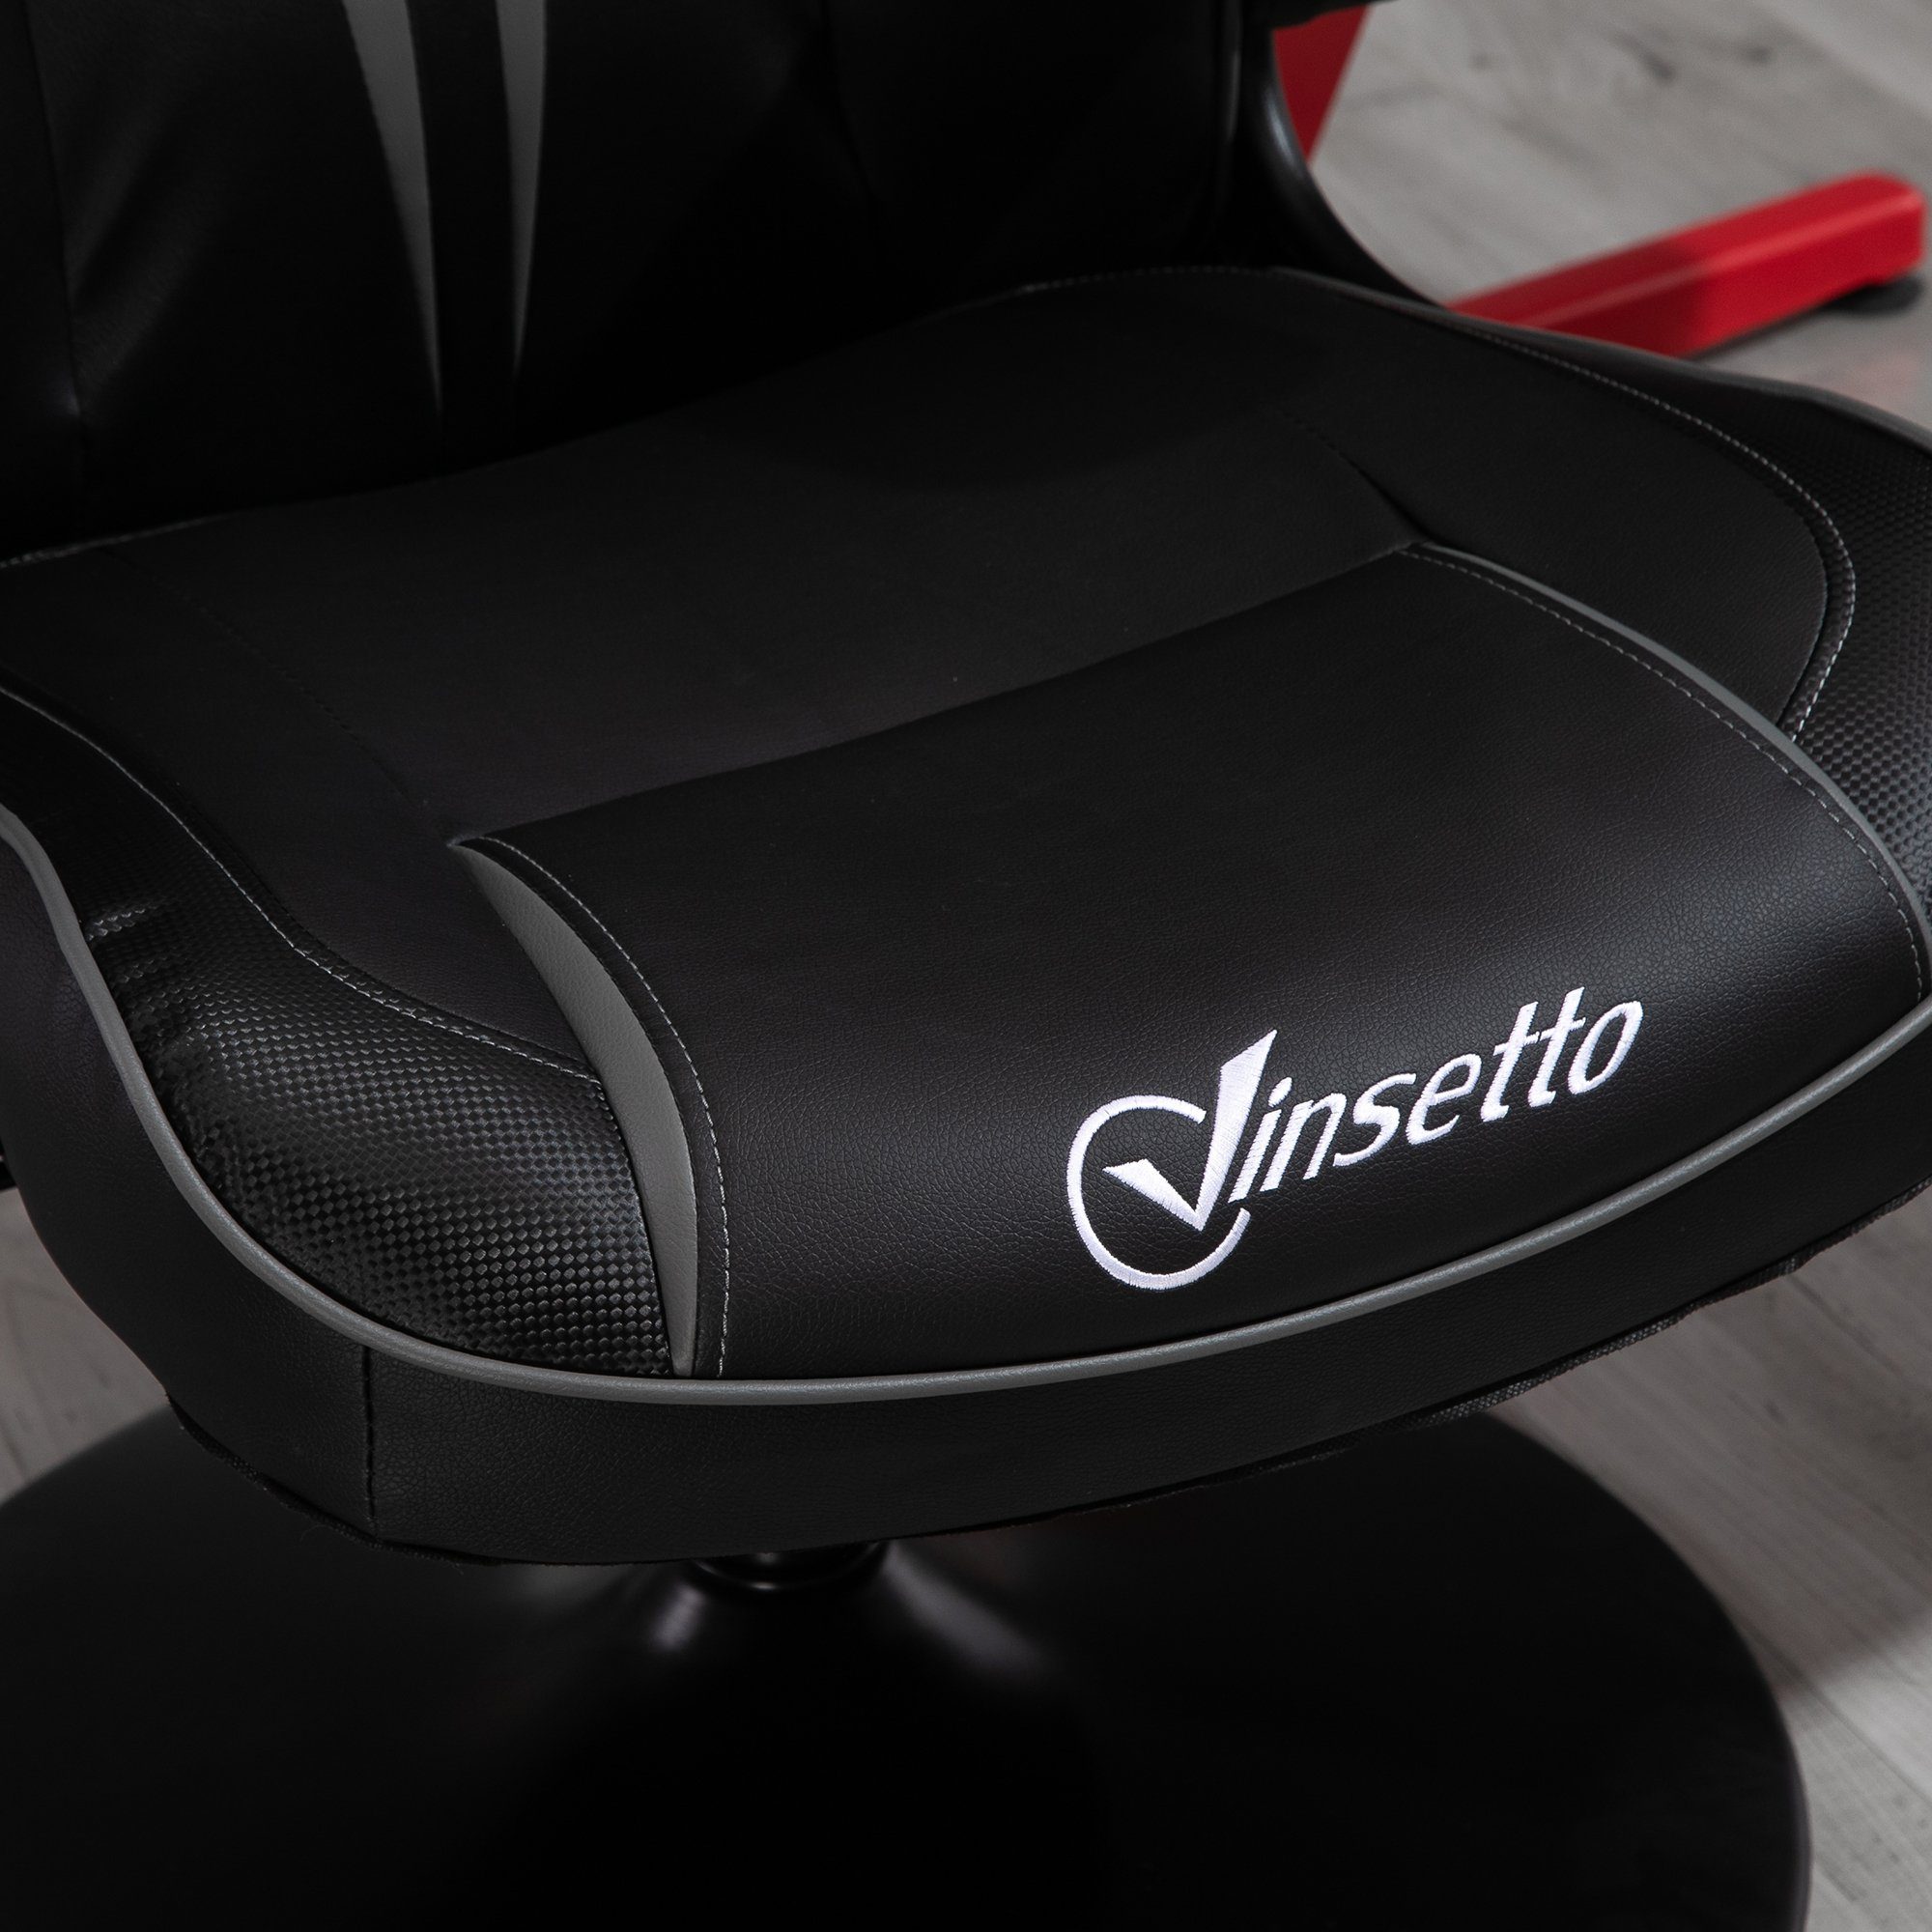 | Schreibtischstuhl Gaming ergonomisch schwarz/grau schwarz/grau Vinsetto Stuhl